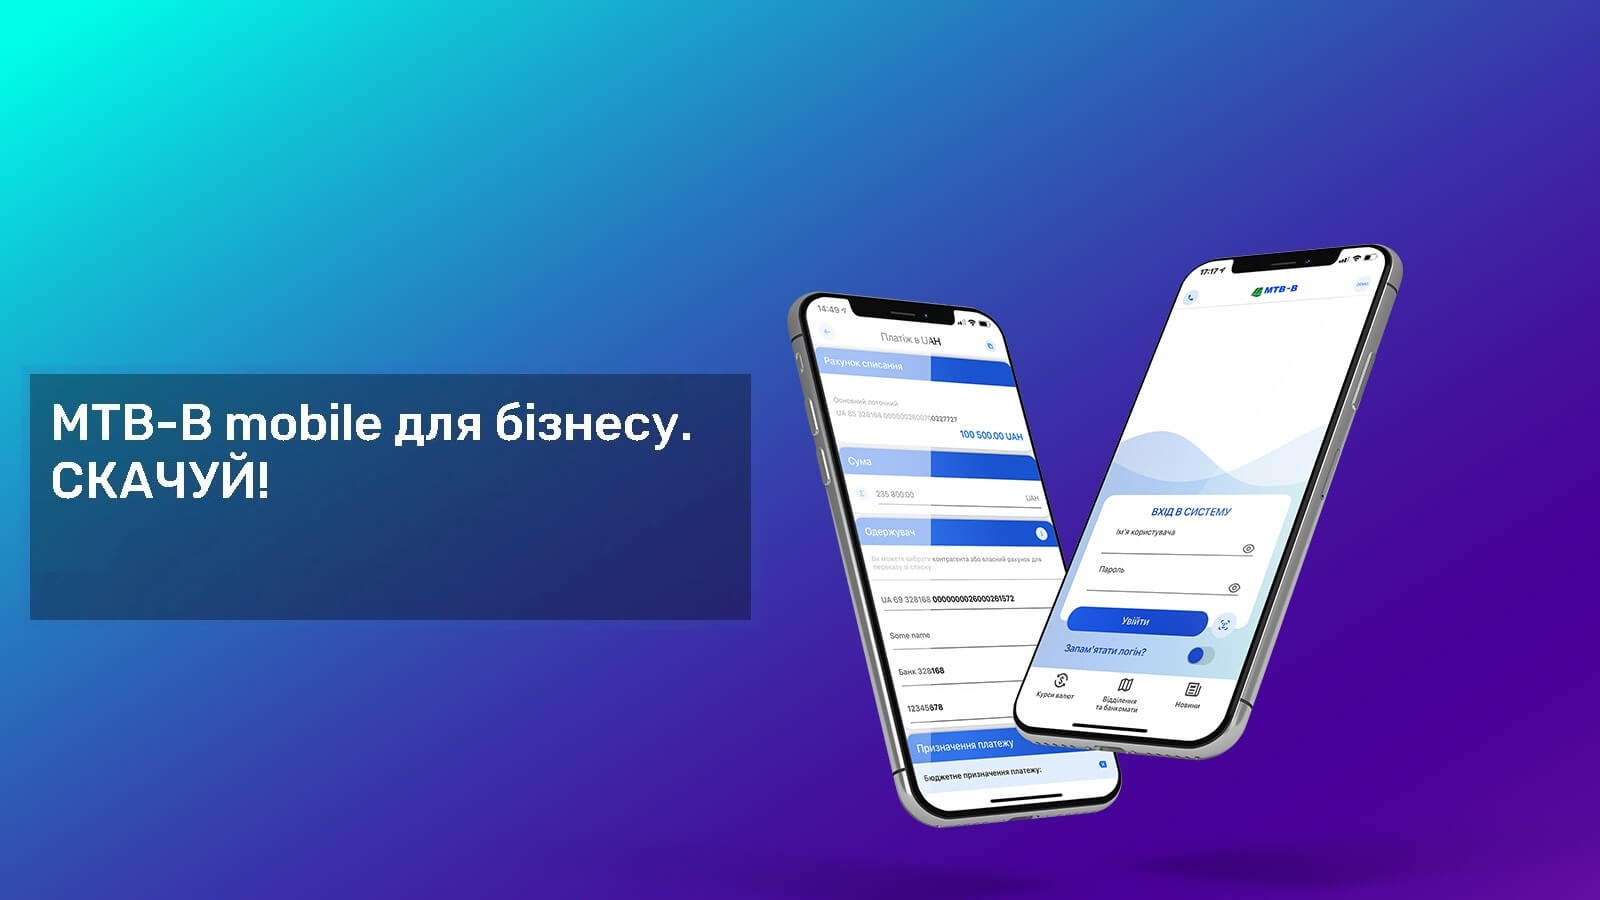 Голова правління МТБ БАНКу Юрій Кралов: мобільний додаток MTB-B mobile дозволяє працювати відразу з декількома підприємствами 